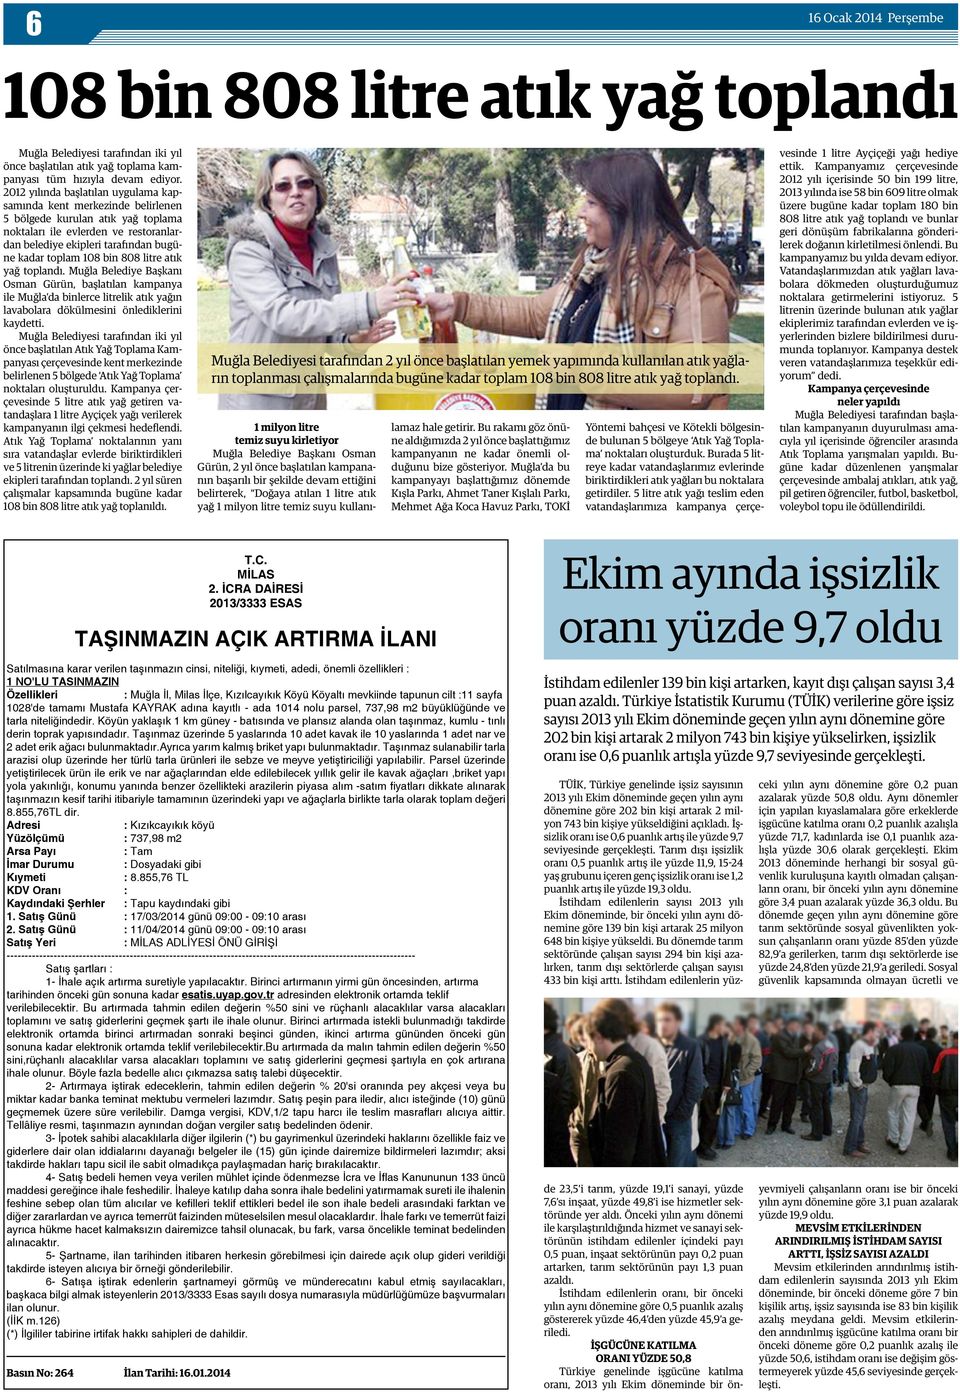 bin 808 litre atık yağ toplandı. Muğla Belediye Başkanı Osman Gürün, başlatılan kampanya ile Muğla da binlerce litrelik atık yağın lavabolara dökülmesini önlediklerini kaydetti.